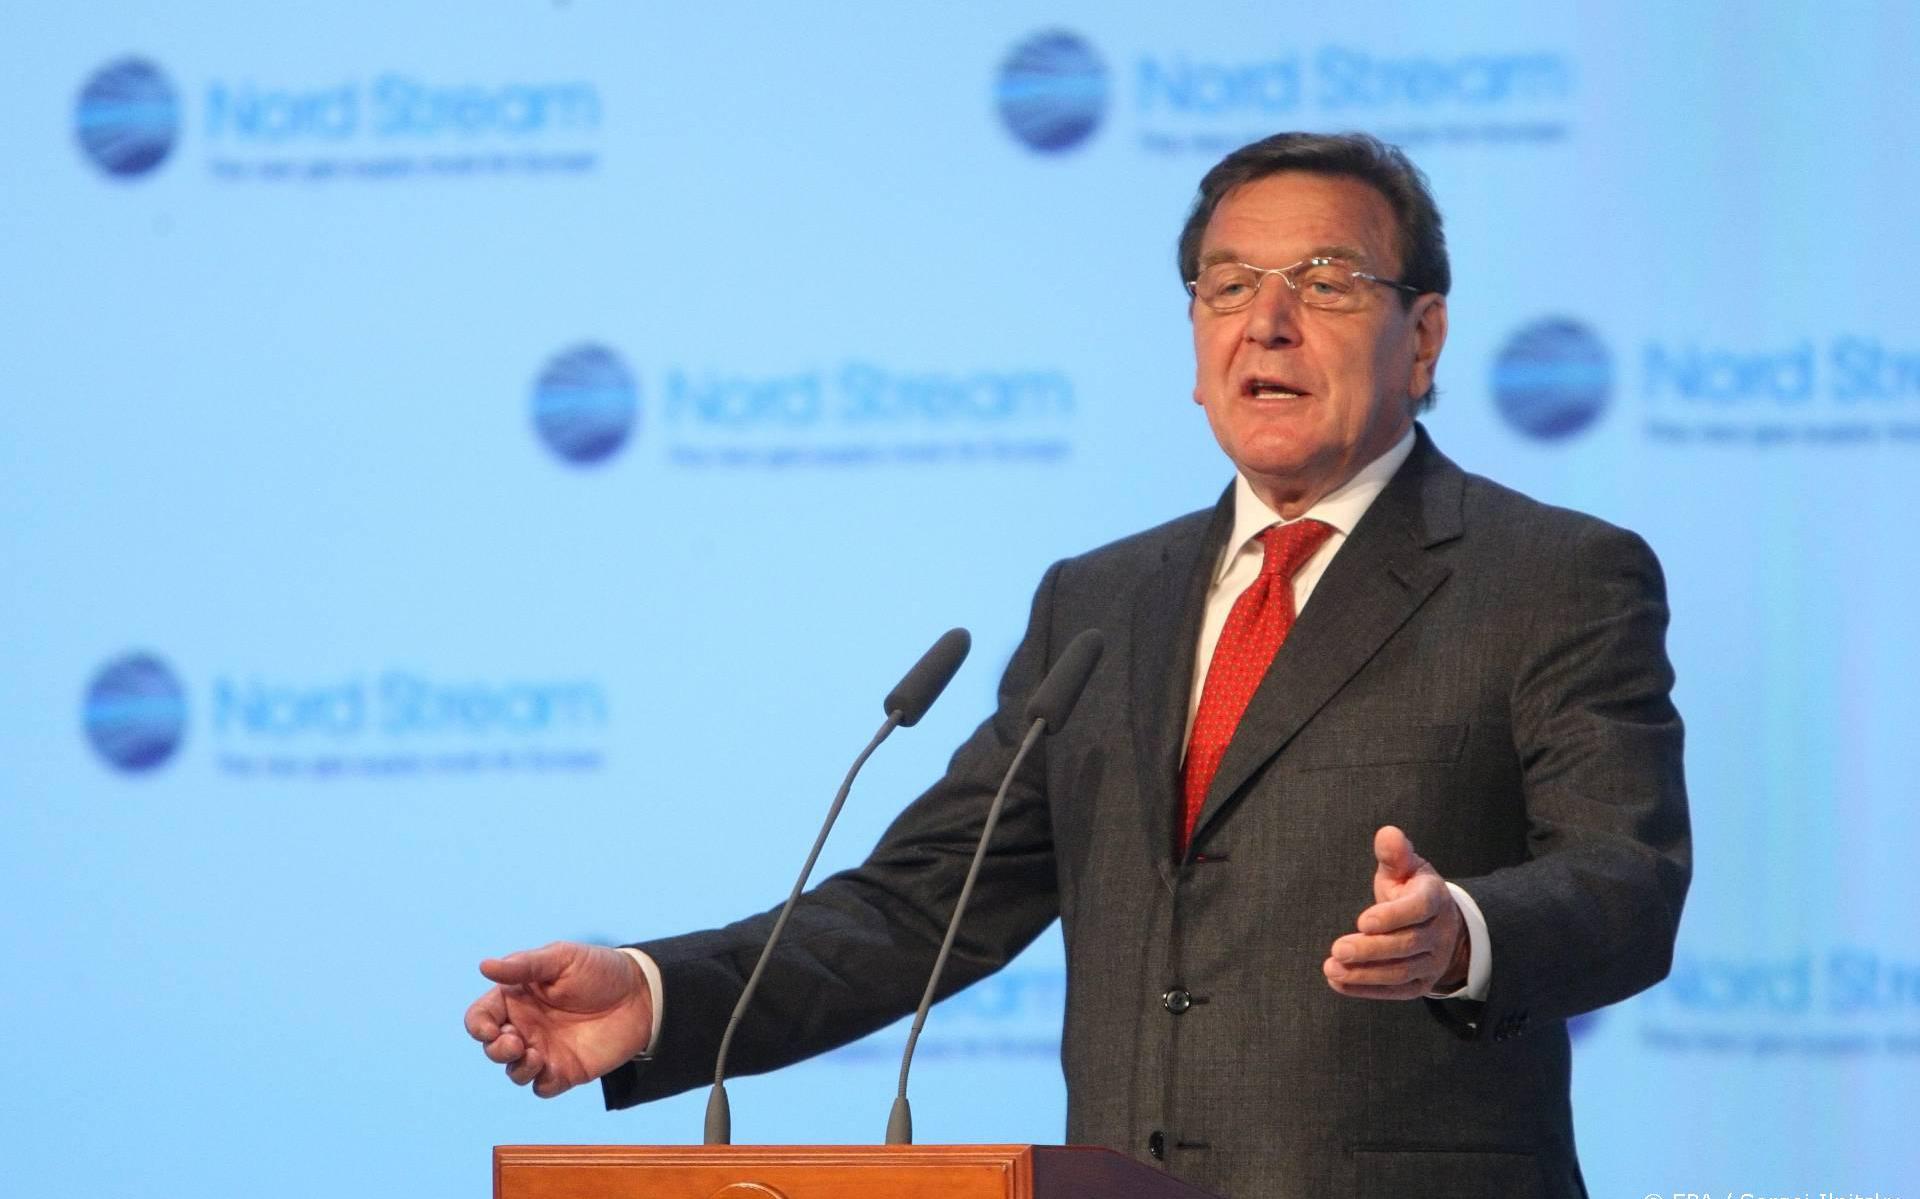 Altkanzler Schröder spricht mit Putin über eine Gaspipeline